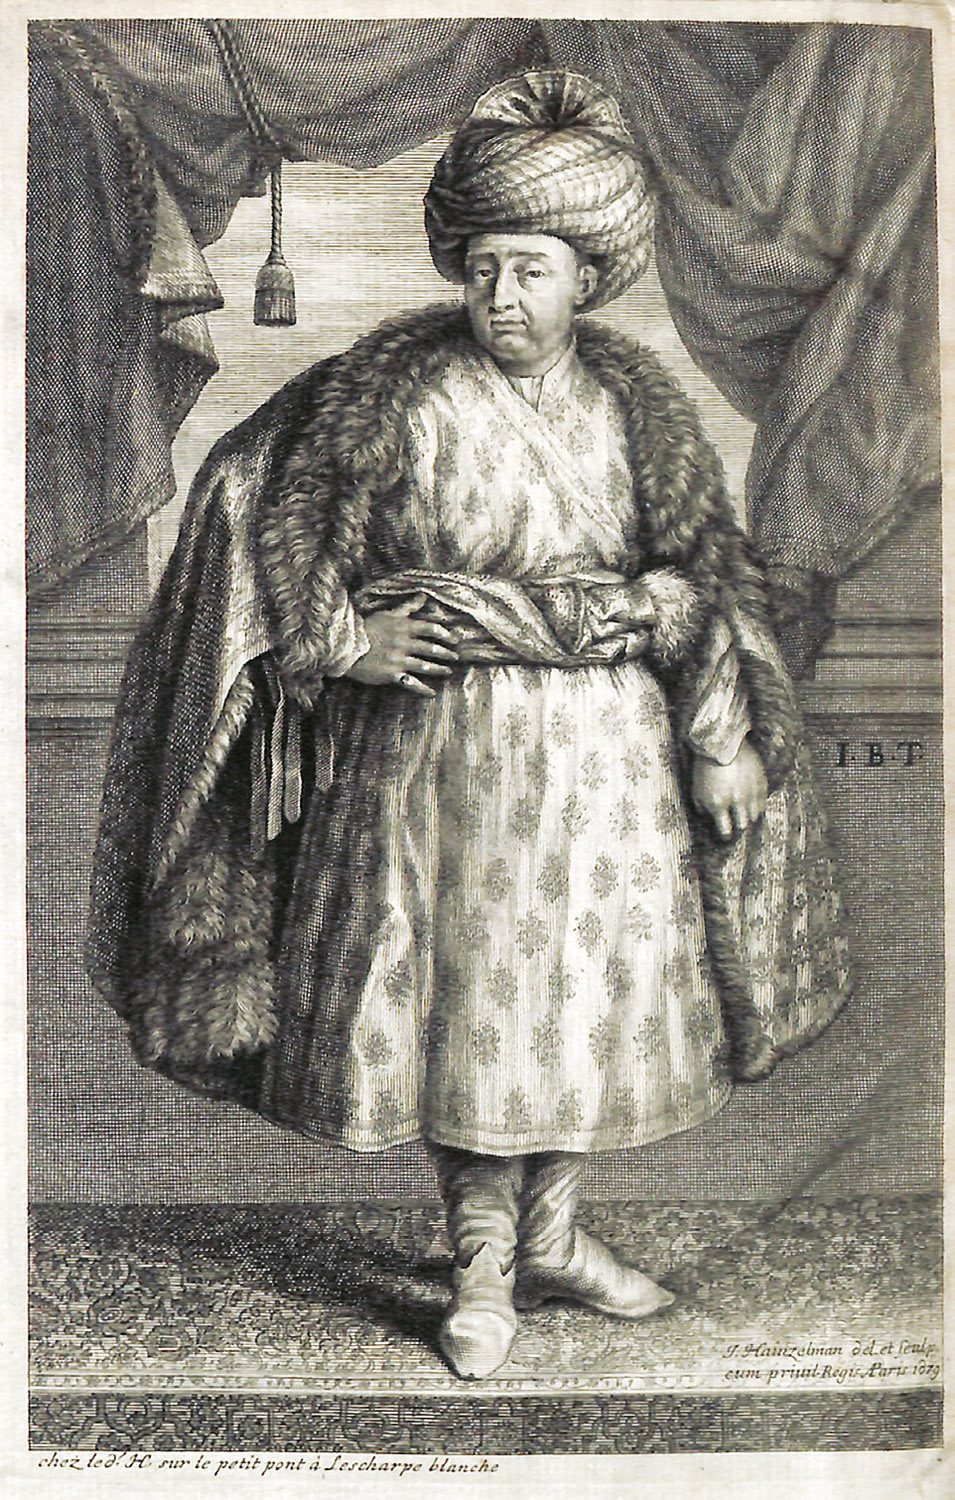 TAVERNIER, Jean Baptiste, baron d’ Aubonne.